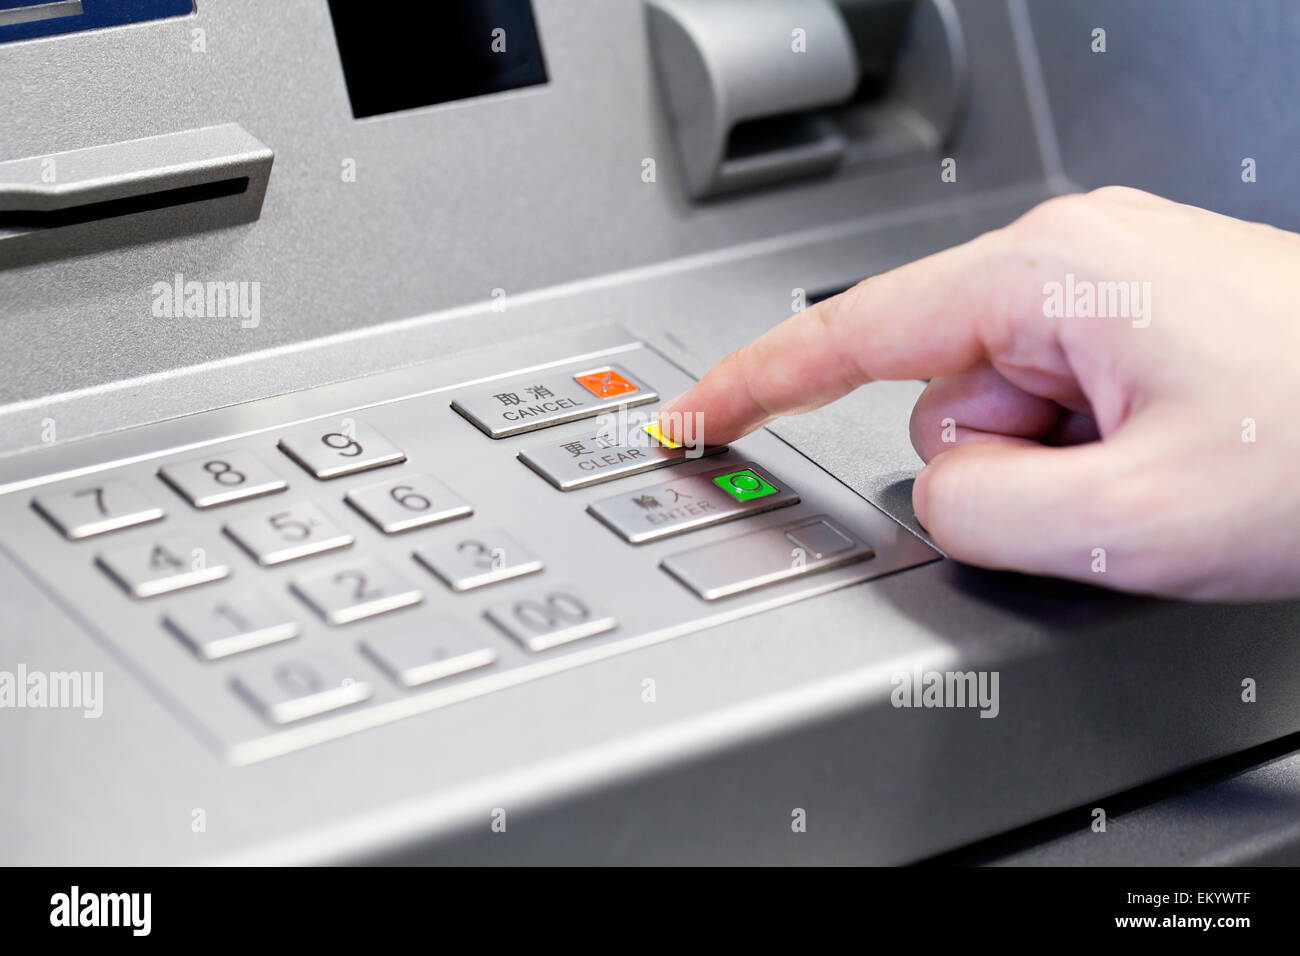 Human hand using ATM machine Stock Photo